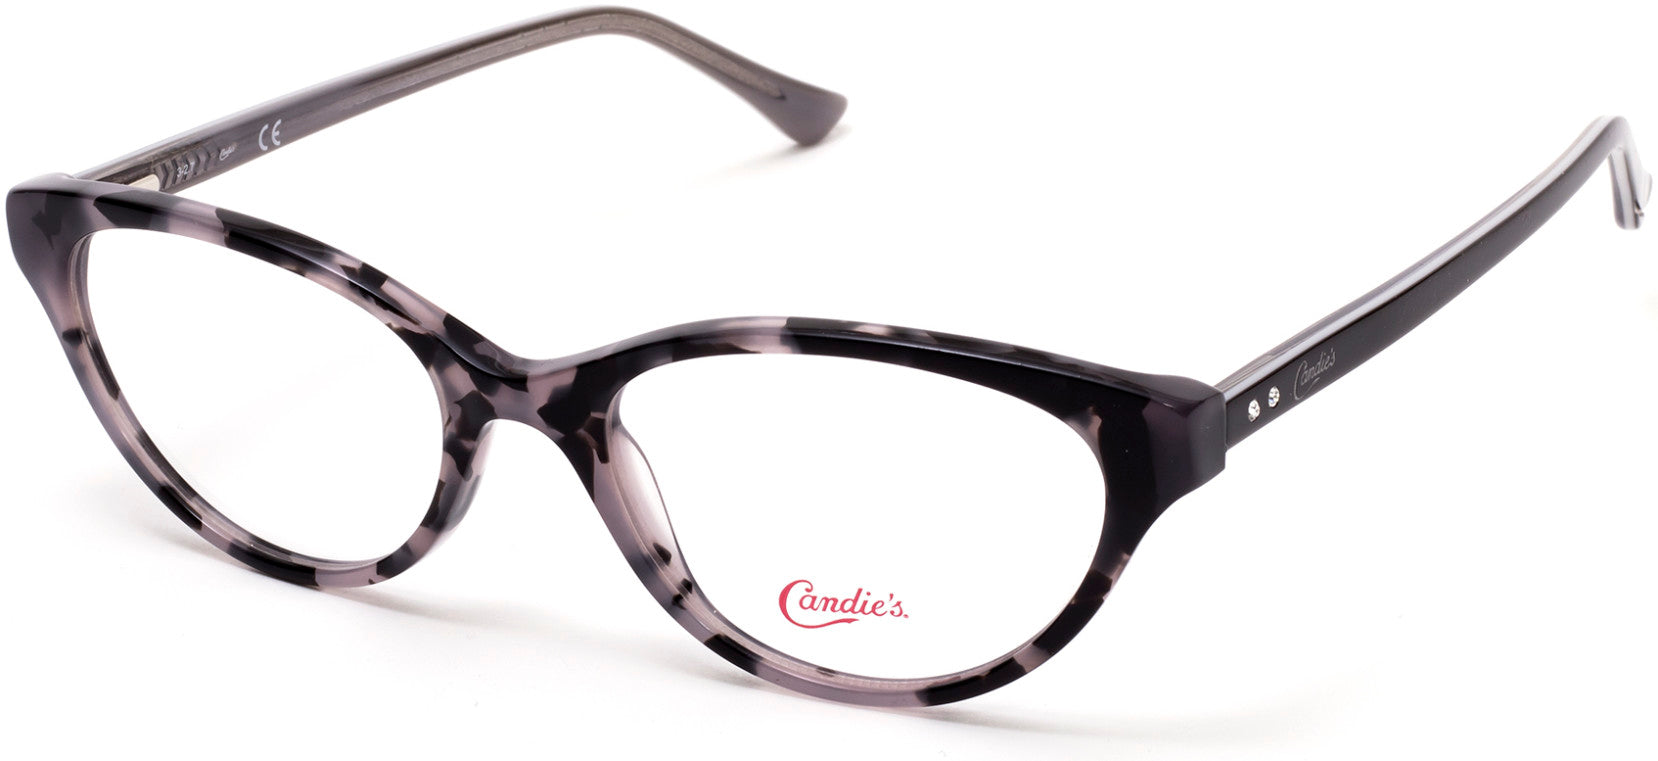 Candies CA0163 Oval Eyeglasses 020-020 - Grey